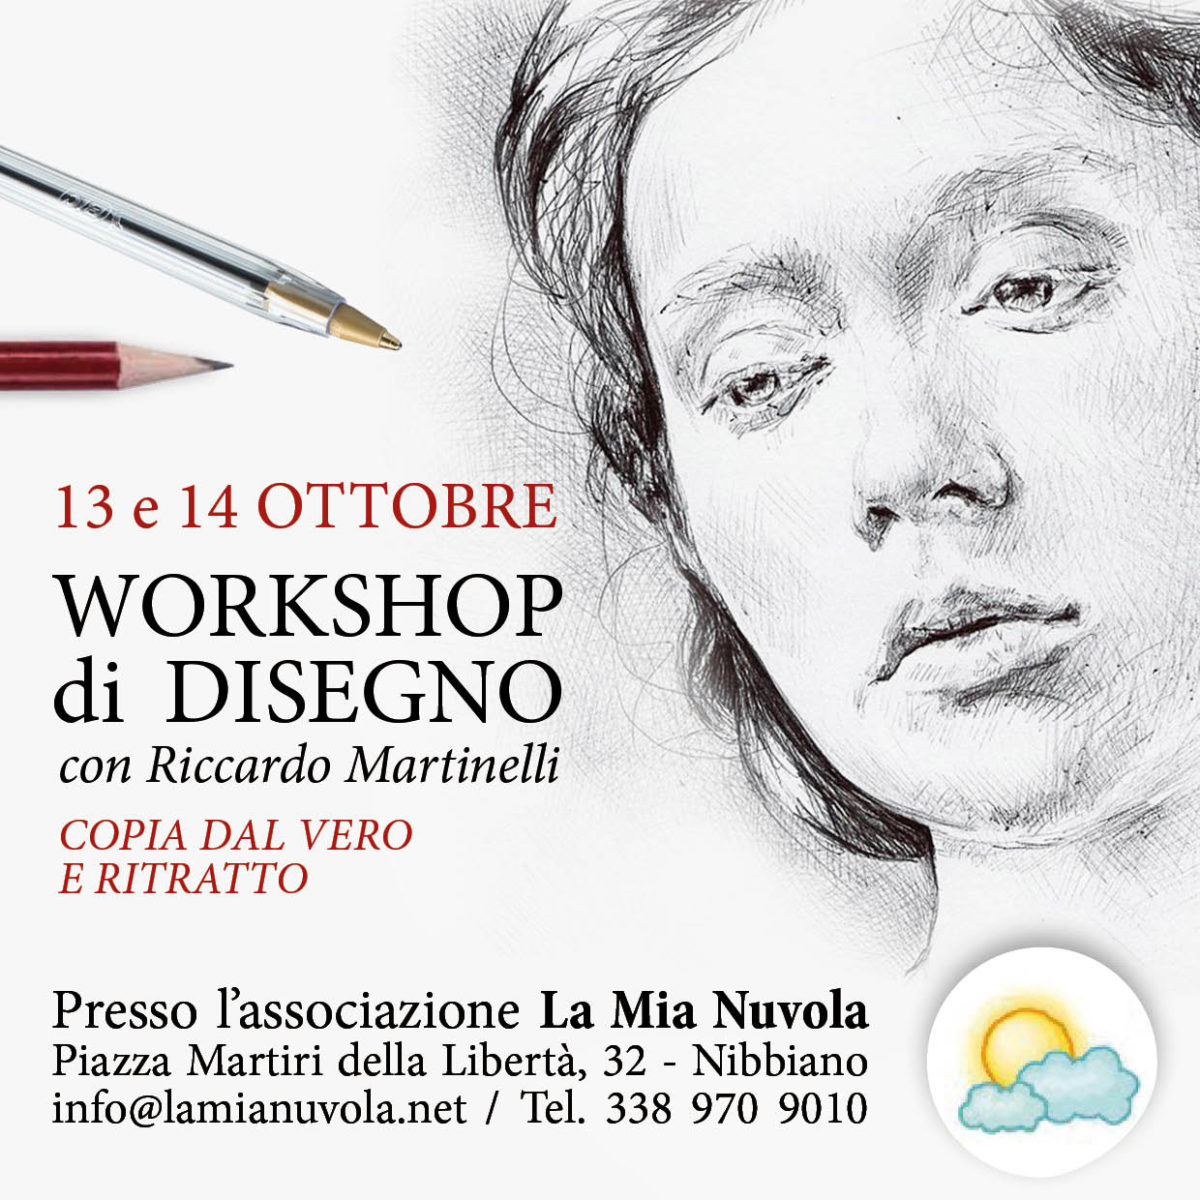 Ottobre 2018: Workshop di disegno a Nibbiano (PC)